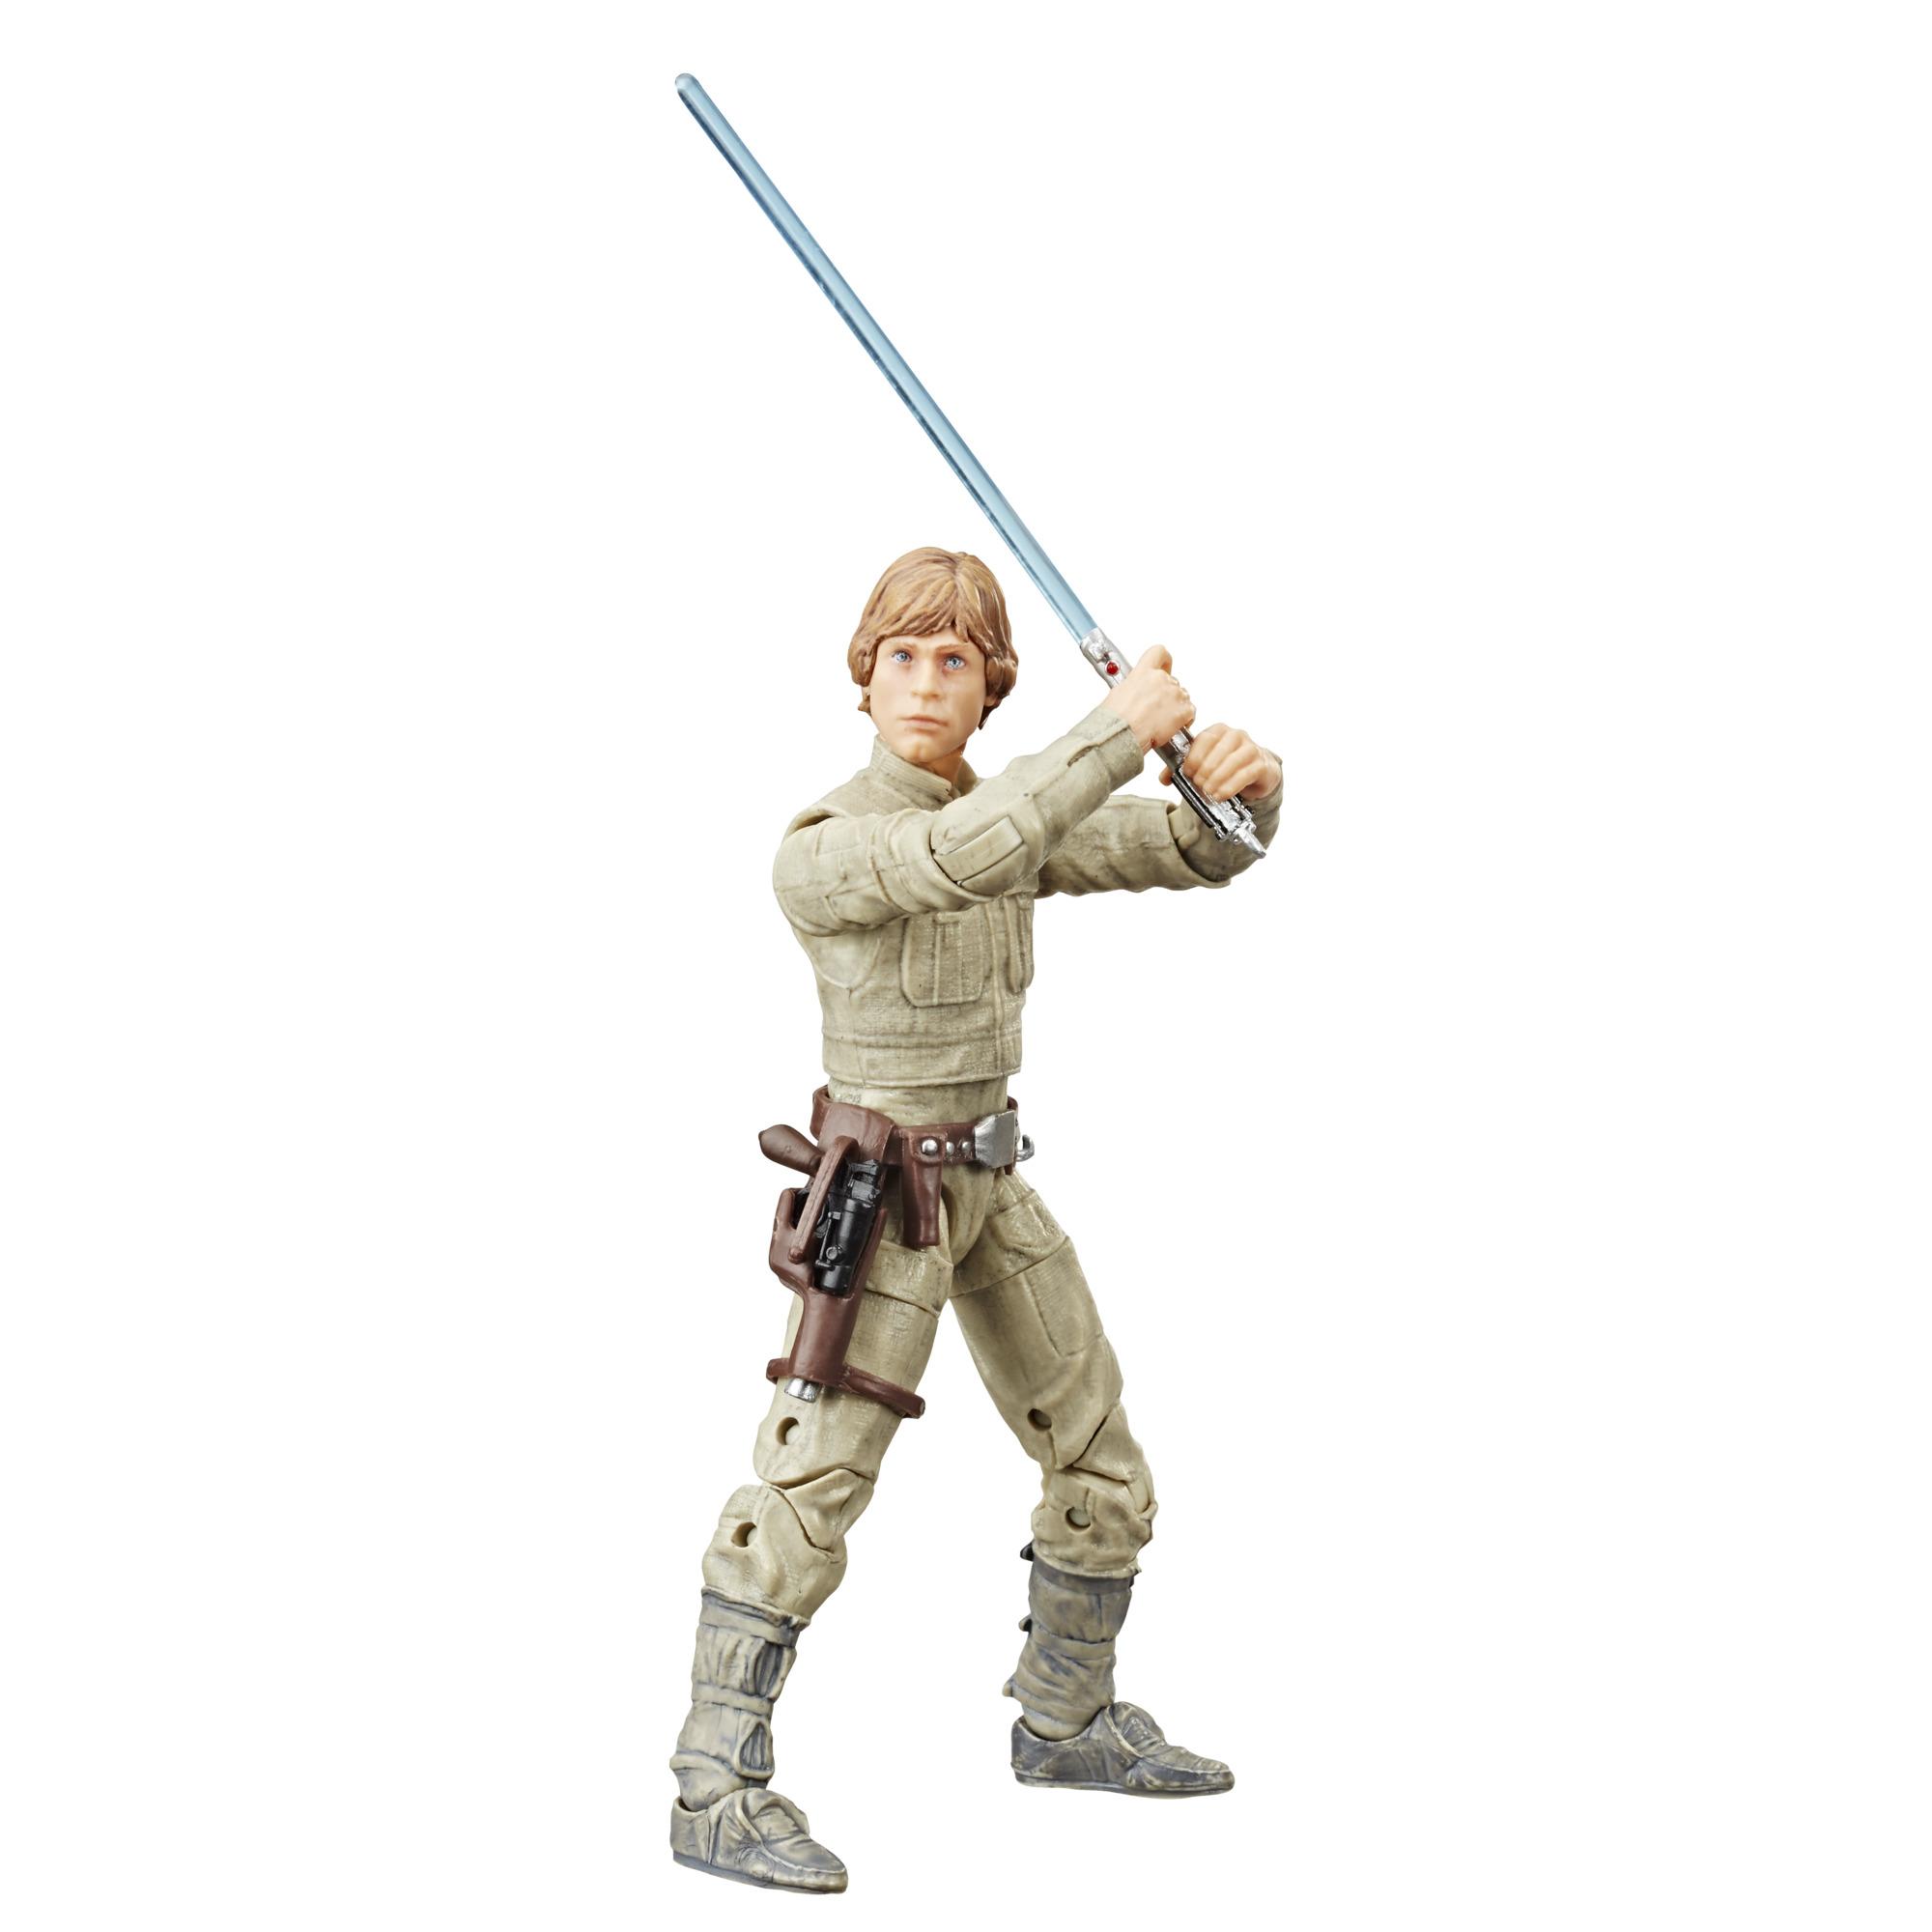 Hasbro Star Wars Luke Skywalker The Empire Strikes Back Action Figure for sale online